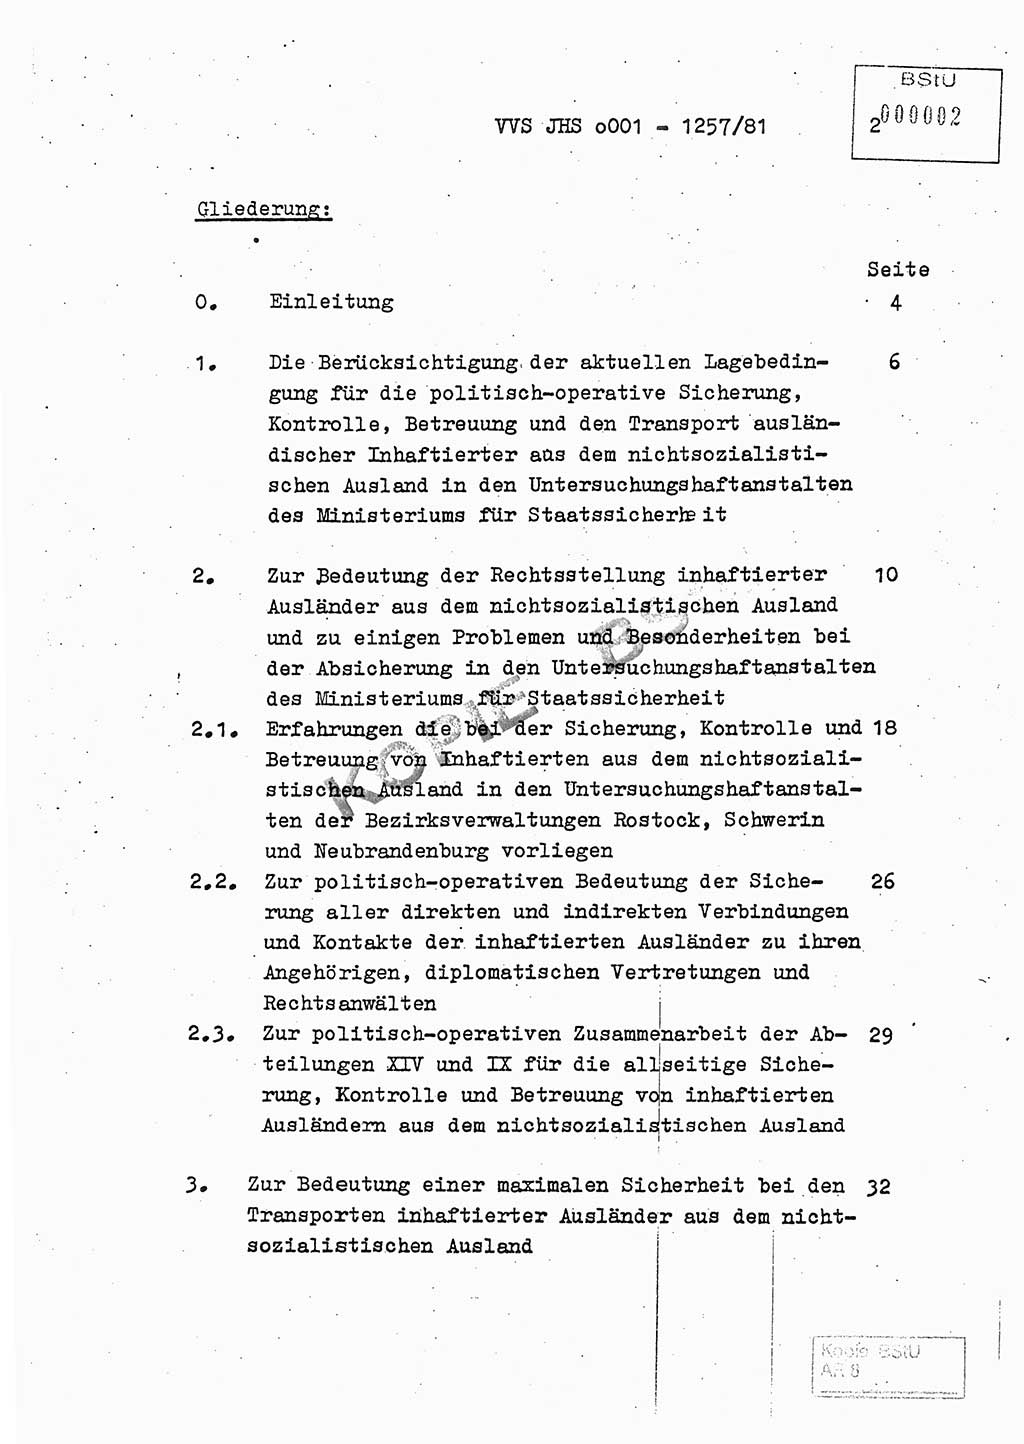 Fachschulabschlußarbeit Unterleutnant Dieter Möller (BV Rst. Abt. ⅩⅣ), Ministerium für Staatssicherheit (MfS) [Deutsche Demokratische Republik (DDR)], Juristische Hochschule (JHS), Vertrauliche Verschlußsache (VVS) o001-1257/81, Potsdam 1982, Seite 2 (FS-Abschl.-Arb. MfS DDR JHS VVS o001-1257/81 1982, S. 2)